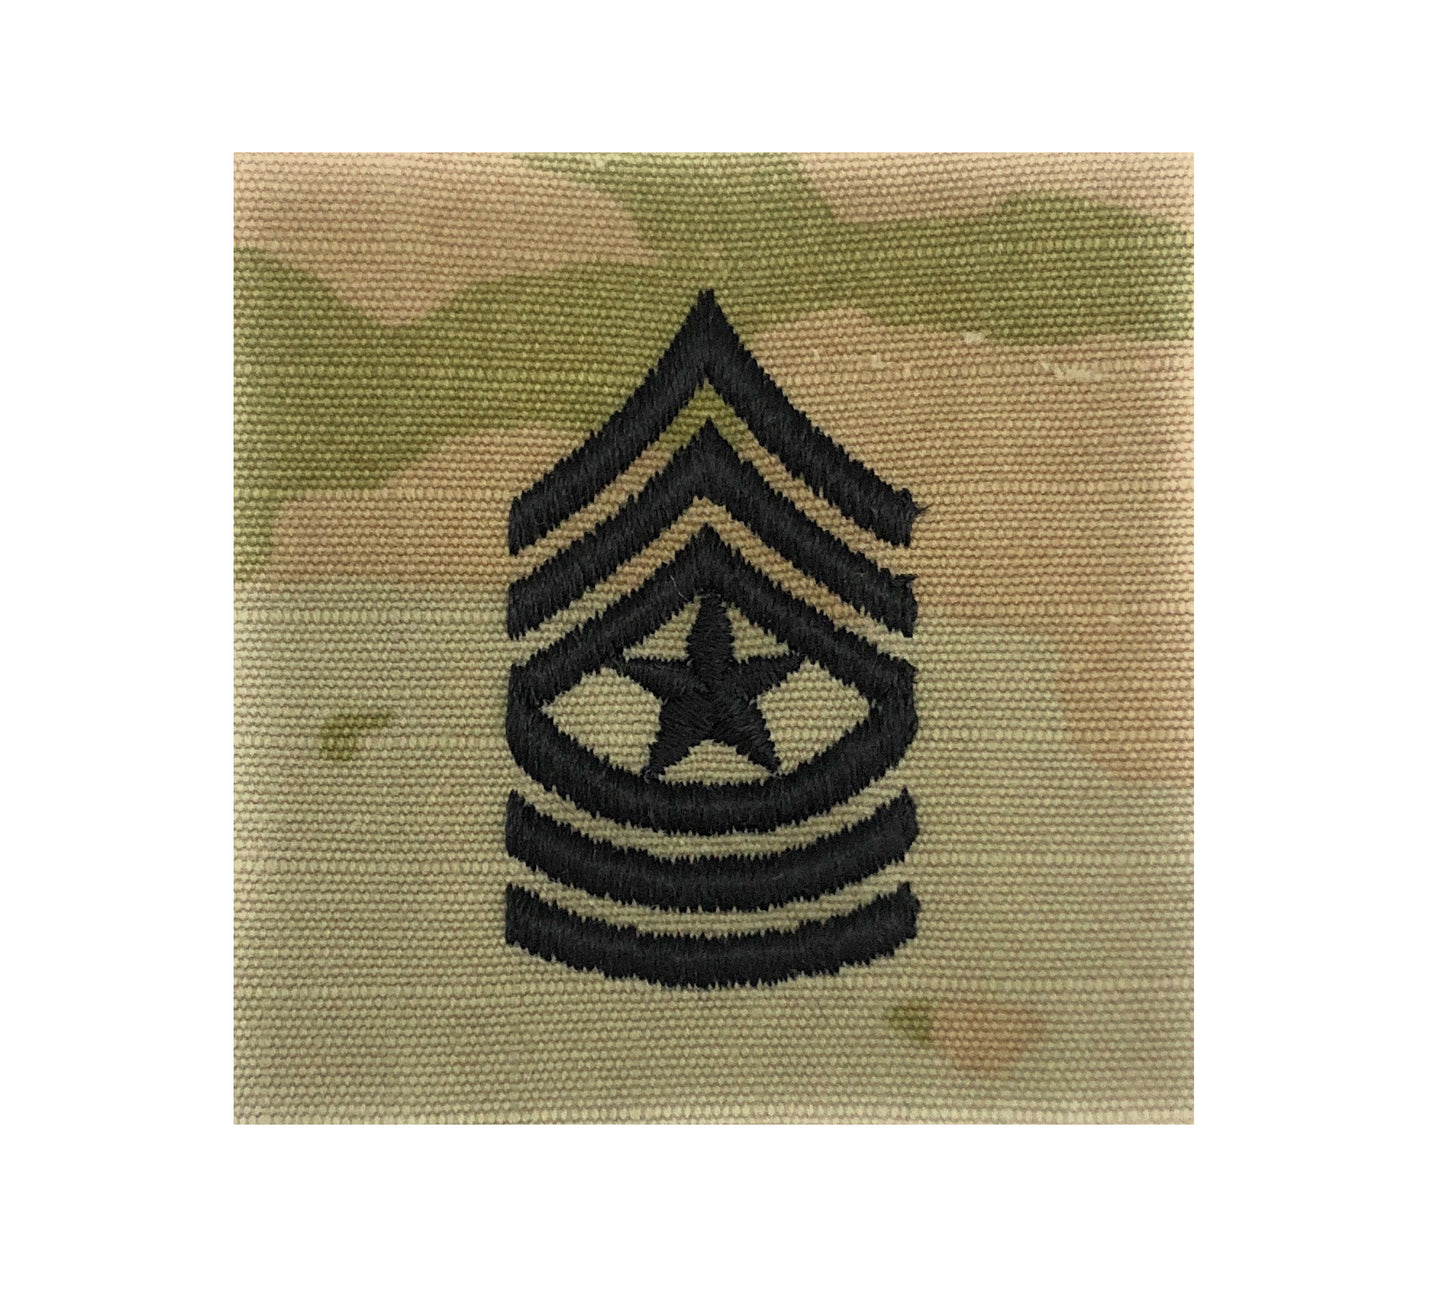 US Army E9 Sergeant Major OCP 2x2 Sew-On Rank For Shirt,Jacket,Coat